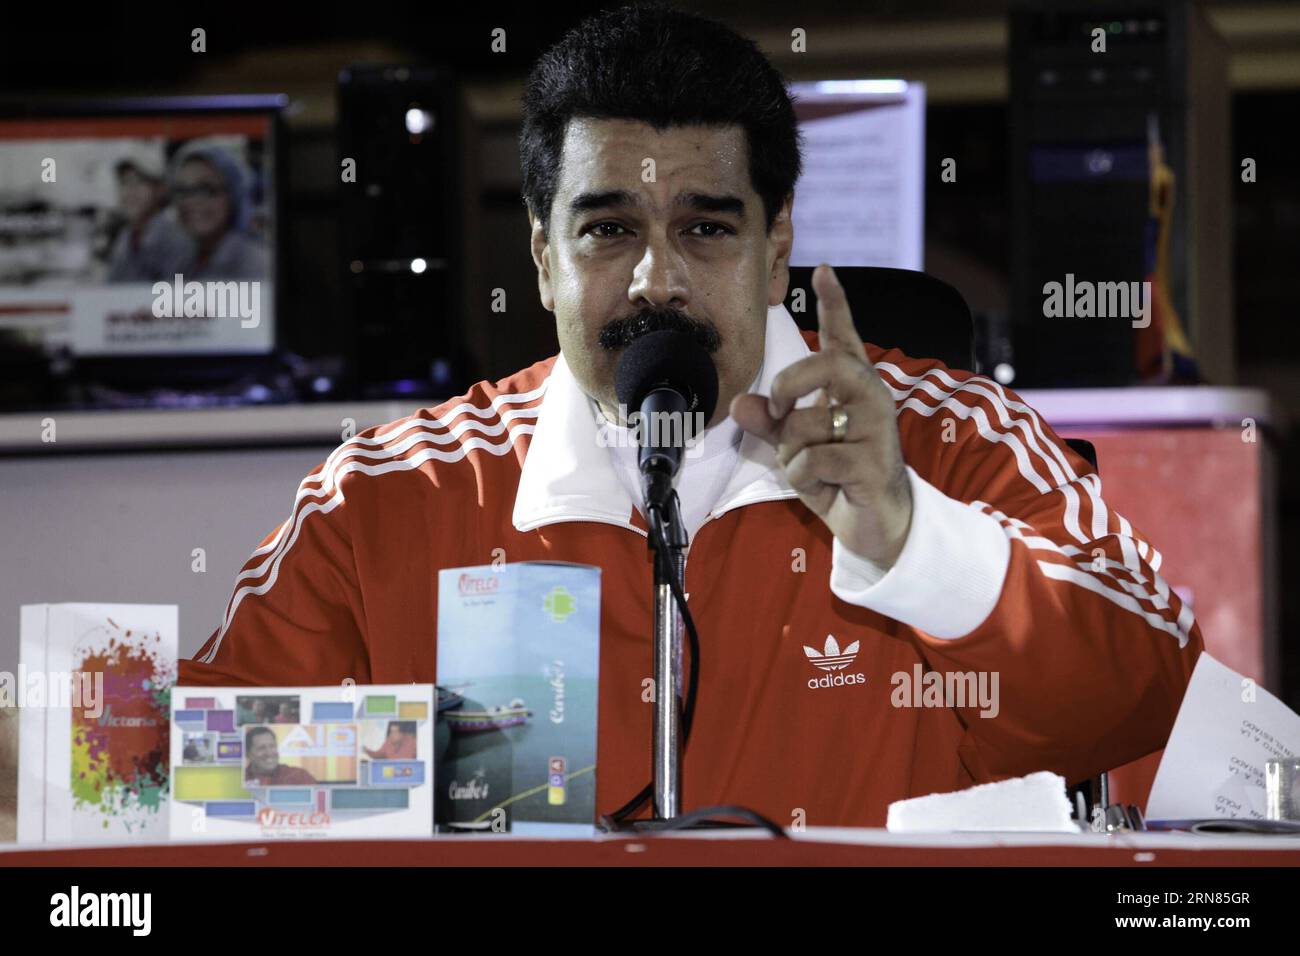 FALCON, 7 ottobre 2015 - il presidente venezuelano Nicolas Maduro tiene un discorso durante la cerimonia di inaugurazione della seconda linea di produzione della società statale di apparecchiature elettroniche Venezuela Technology Industries (VIT), nello stato di Falcon, Venezuela, il 7 ottobre 2015. Il Venezuela progredisce nel settore delle telecomunicazioni e amplia le sue linee di produzione nazionali, grazie agli accordi di cooperazione firmati con la Cina, sottolineato mercoledì Nicolas Maduro. Maduro ha anche ricordato che questa fabbrica è stata creata nel 2006 attraverso gli accordi con la Cina, e secondo i dati ufficiali, aggiornato Foto Stock